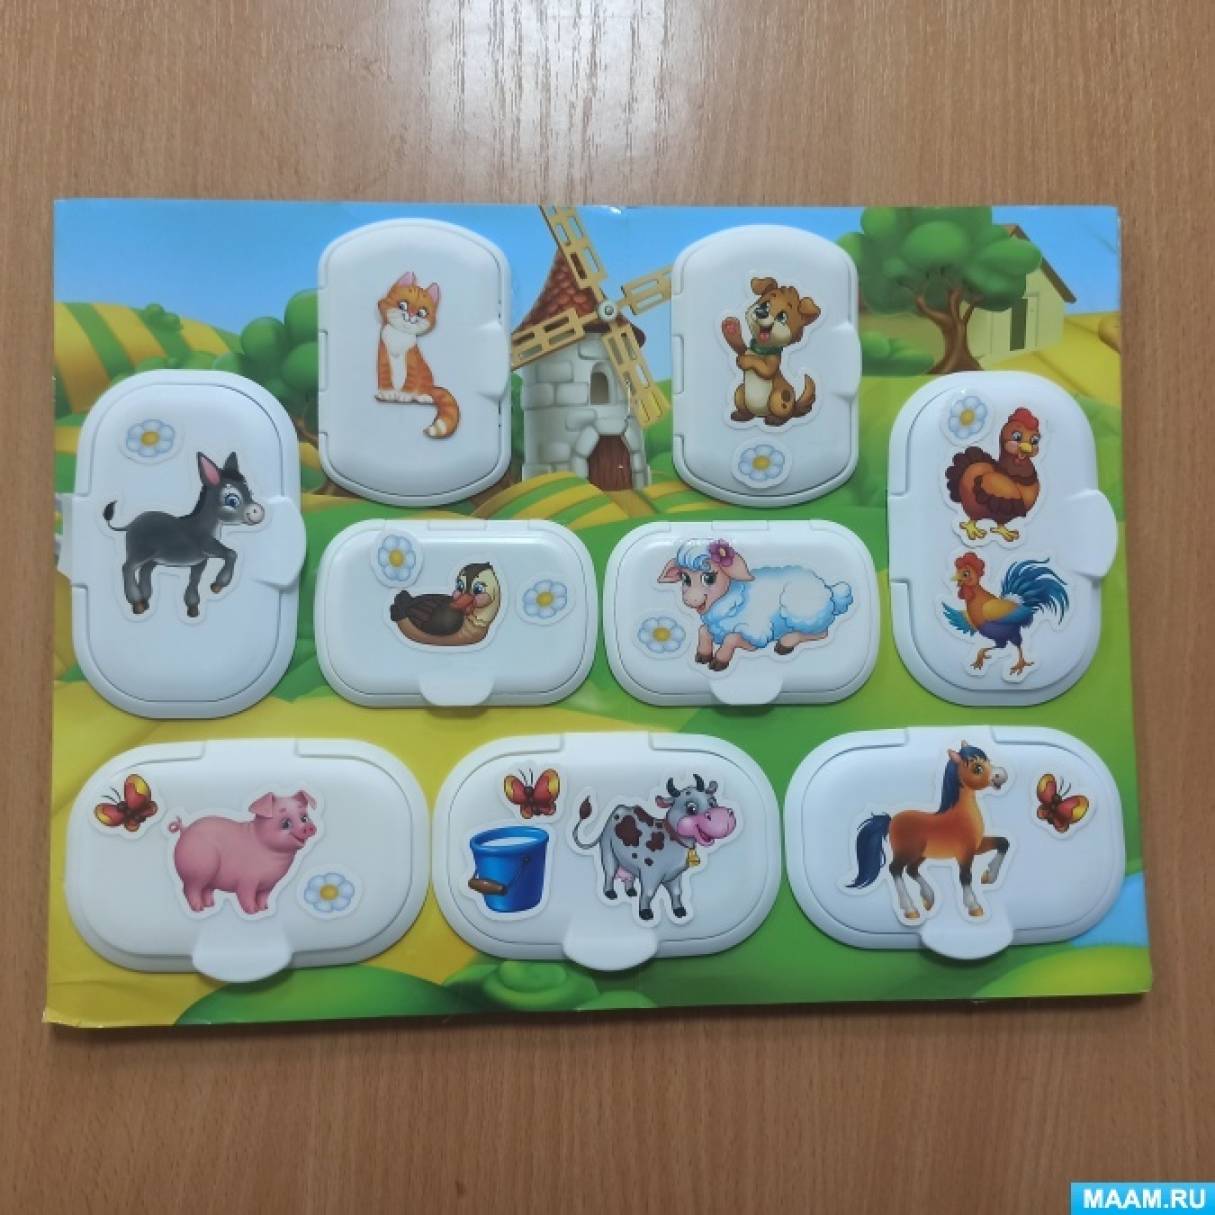 Картотека дидактических игр с целями для детей группы раннего возраста